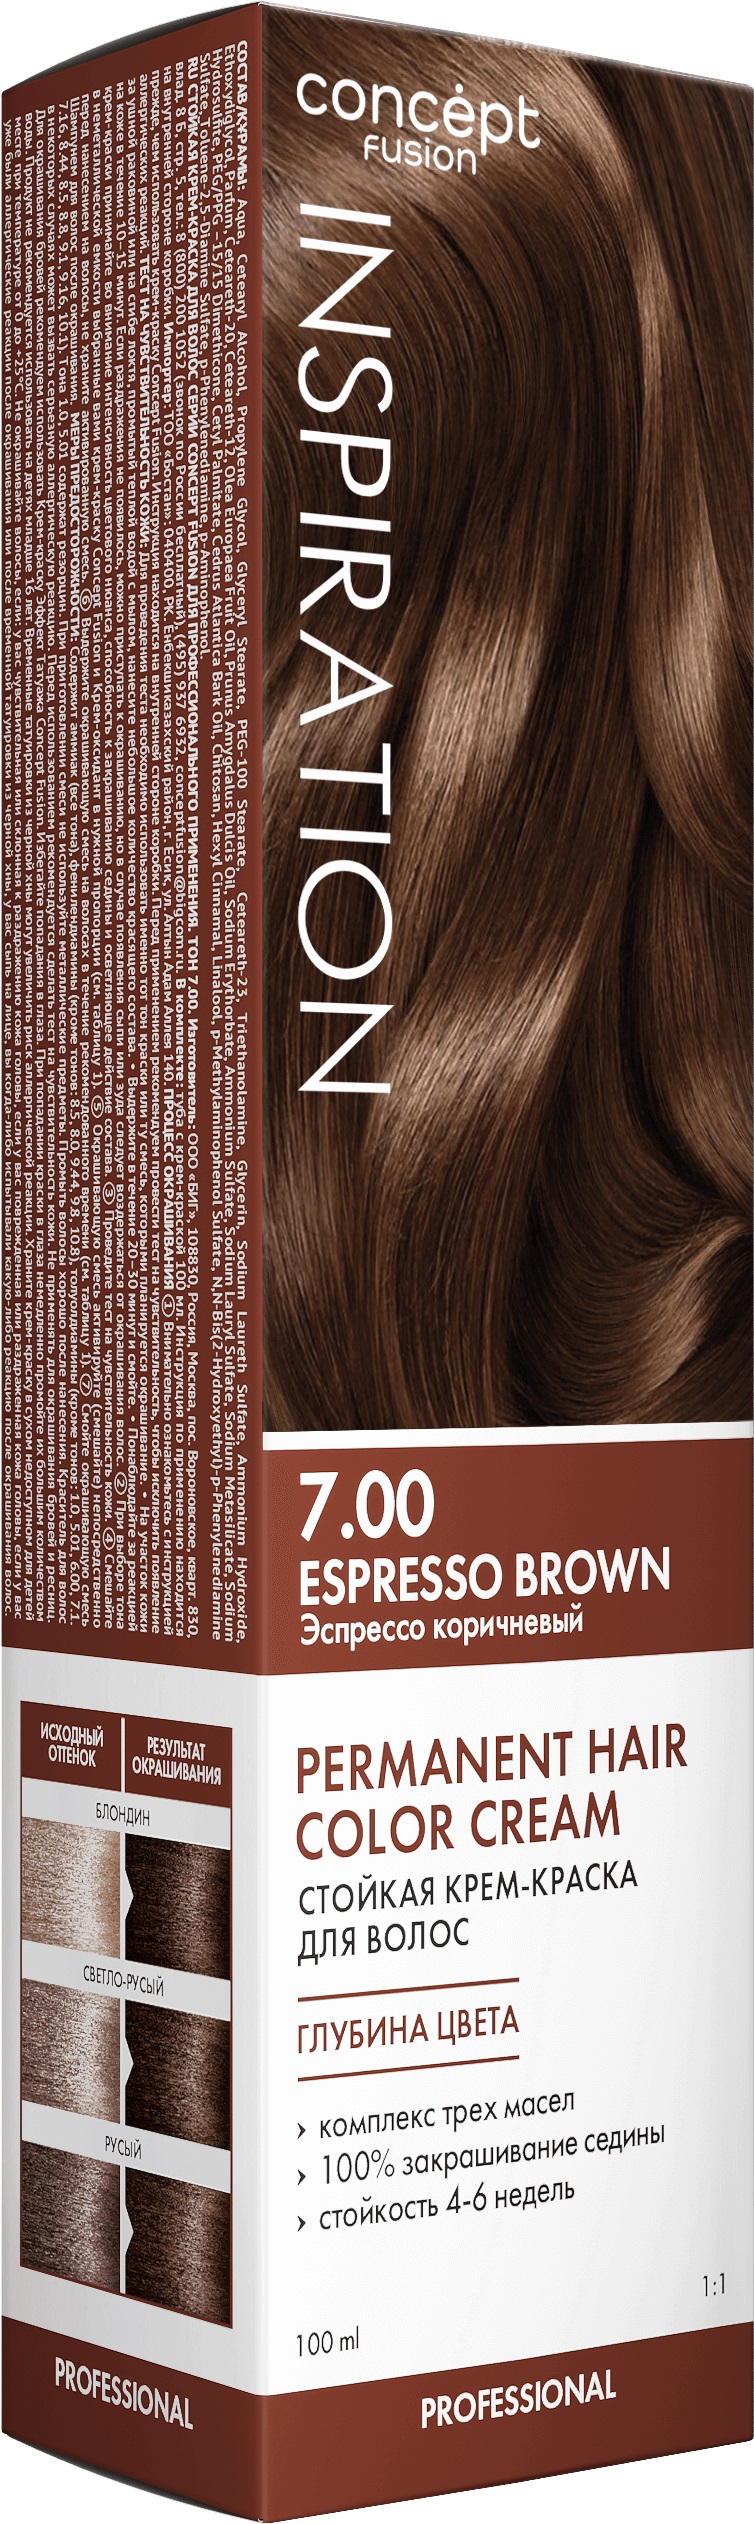 Крем-краска Concept Fusion Inspiration эспрессо коричневый, №7.00, 100 мл lacoste inspiration 50